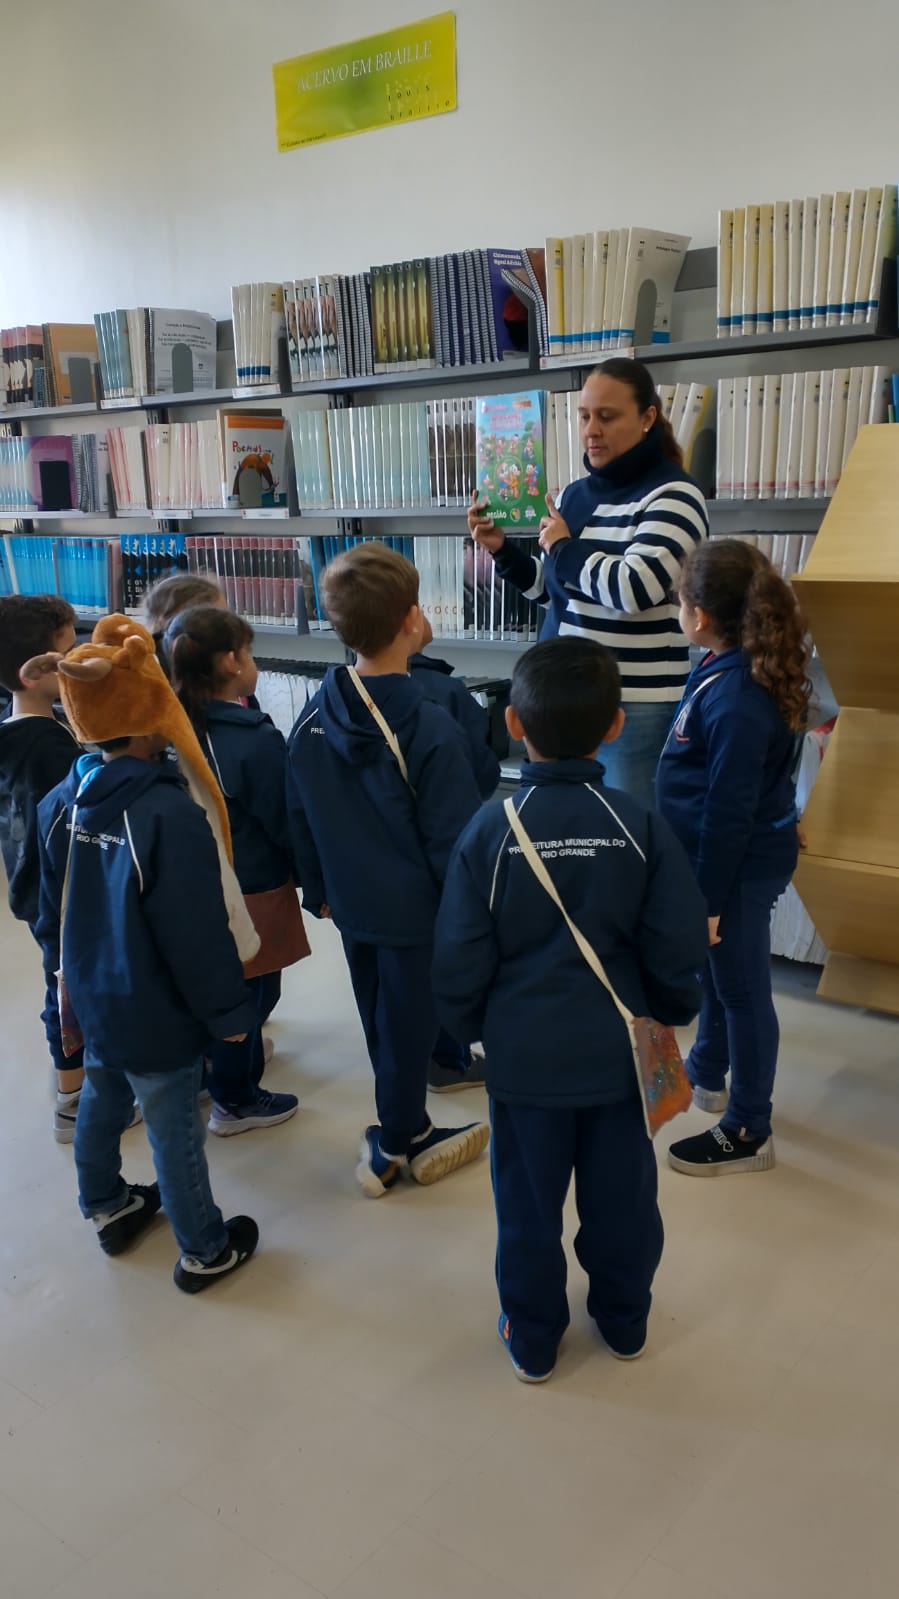 grupo de crianças   em volta de uma bibliotecaria que segura um livro nas mãos, dentro de uma biblioteca.